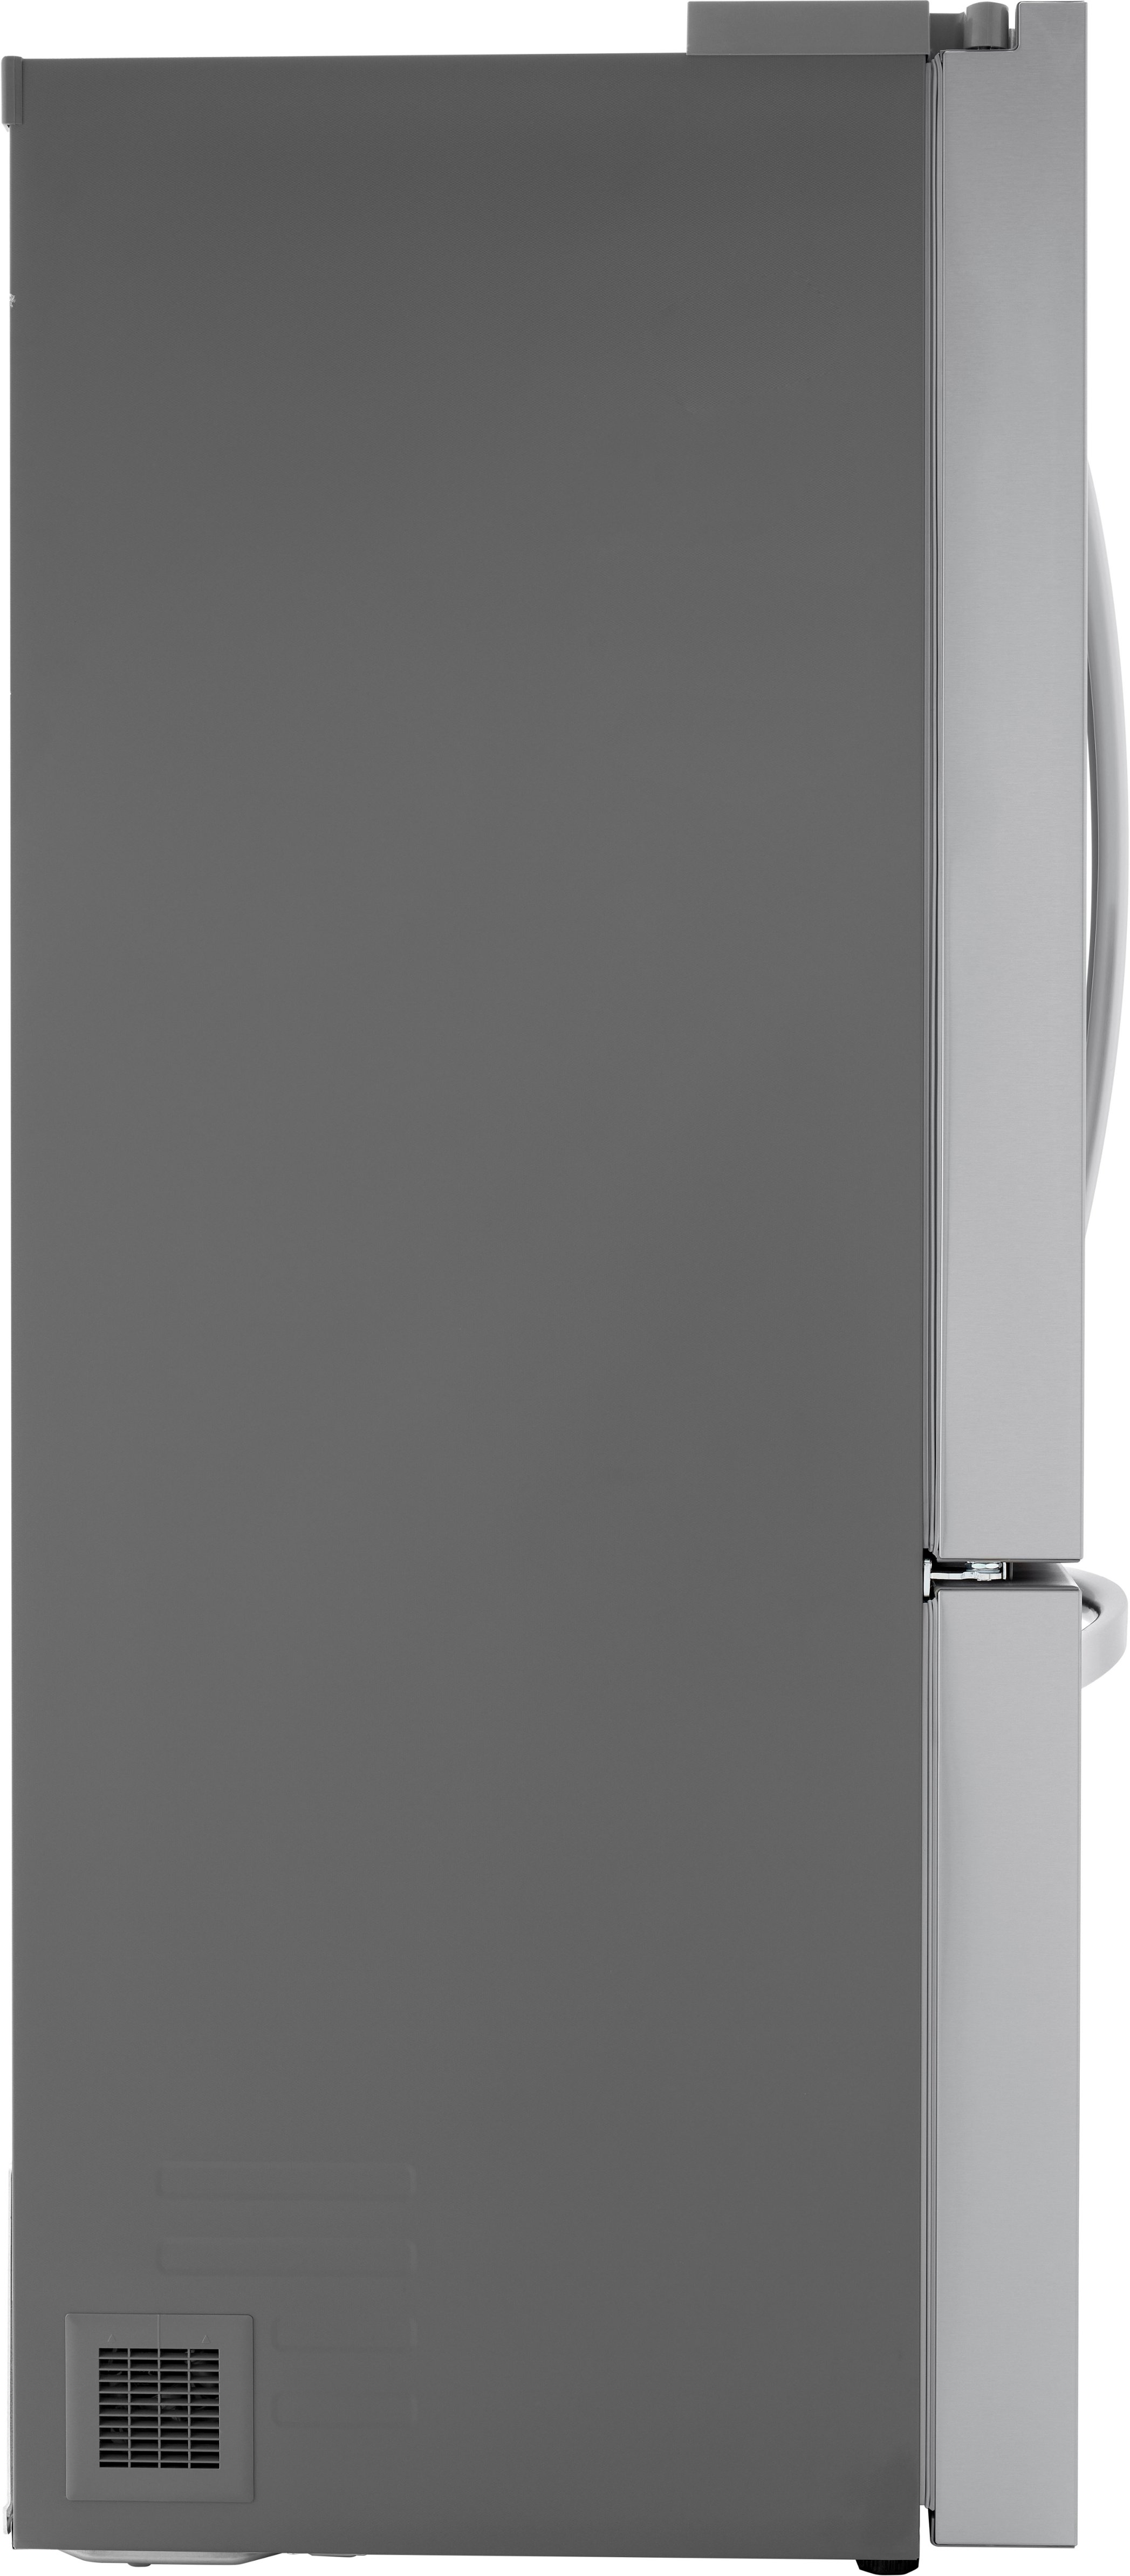 Réfrigérateur Américain, 601L, Door-in-Door ®, Compresseur linéaire, Total No Frost, Moist Balance Crisper, Pure N Fresh, A++ - LG GSS6676PS